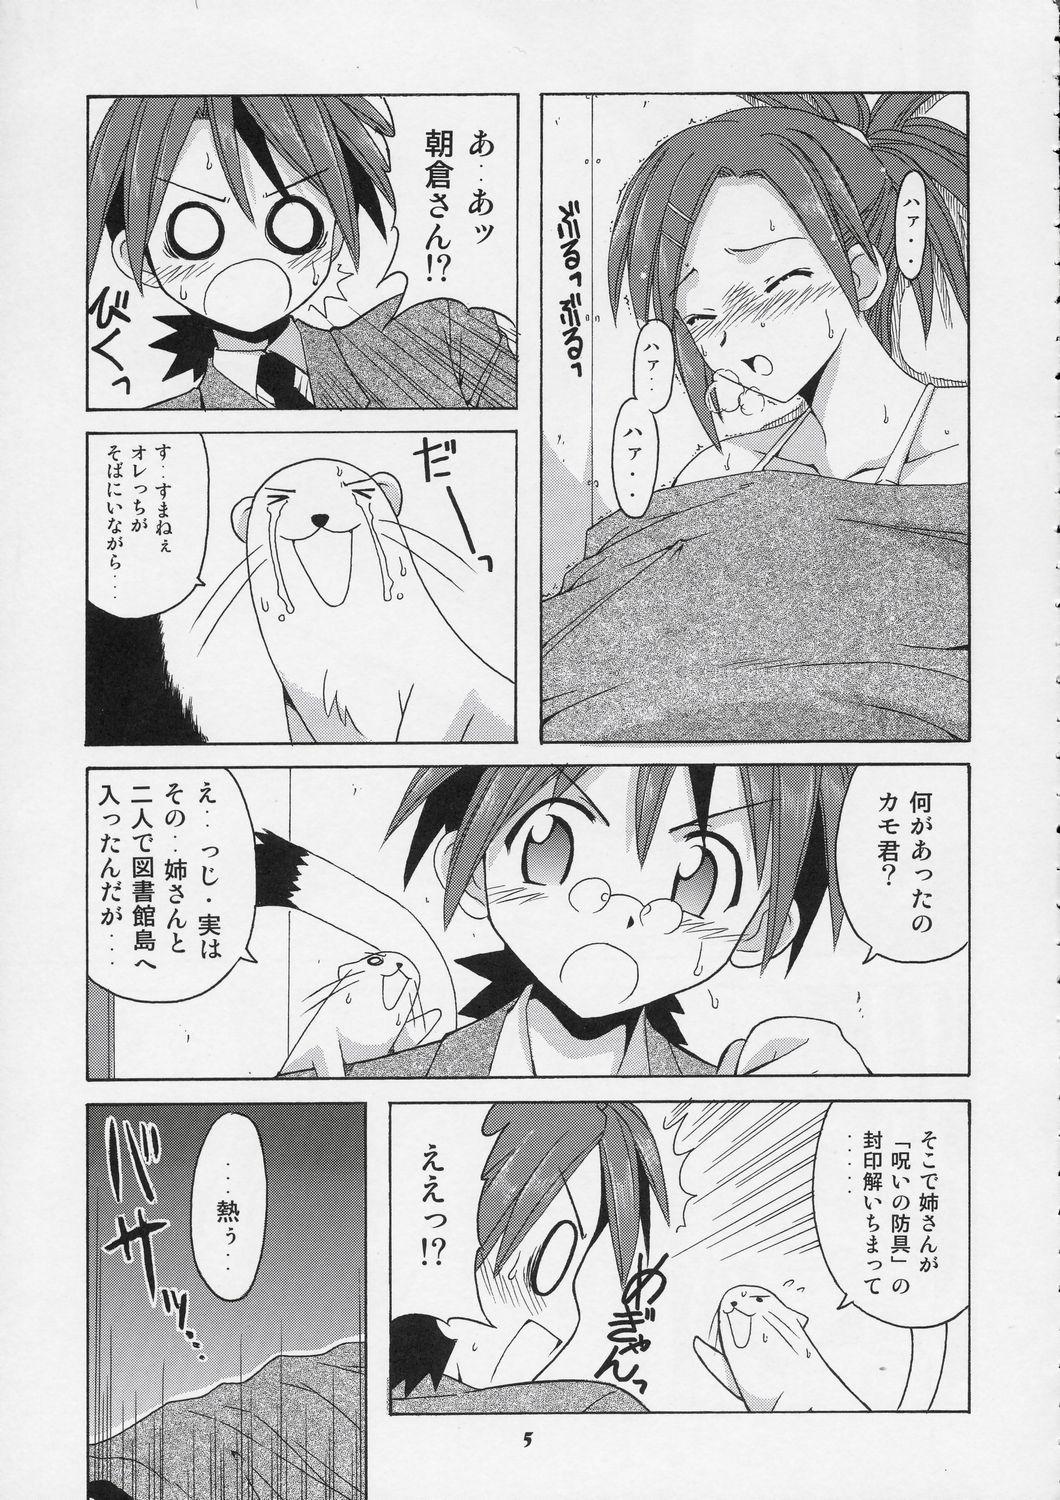 Lolicon Negi-sensei to Himitsu no School Mizugi - Mahou sensei negima Porno 18 - Page 4